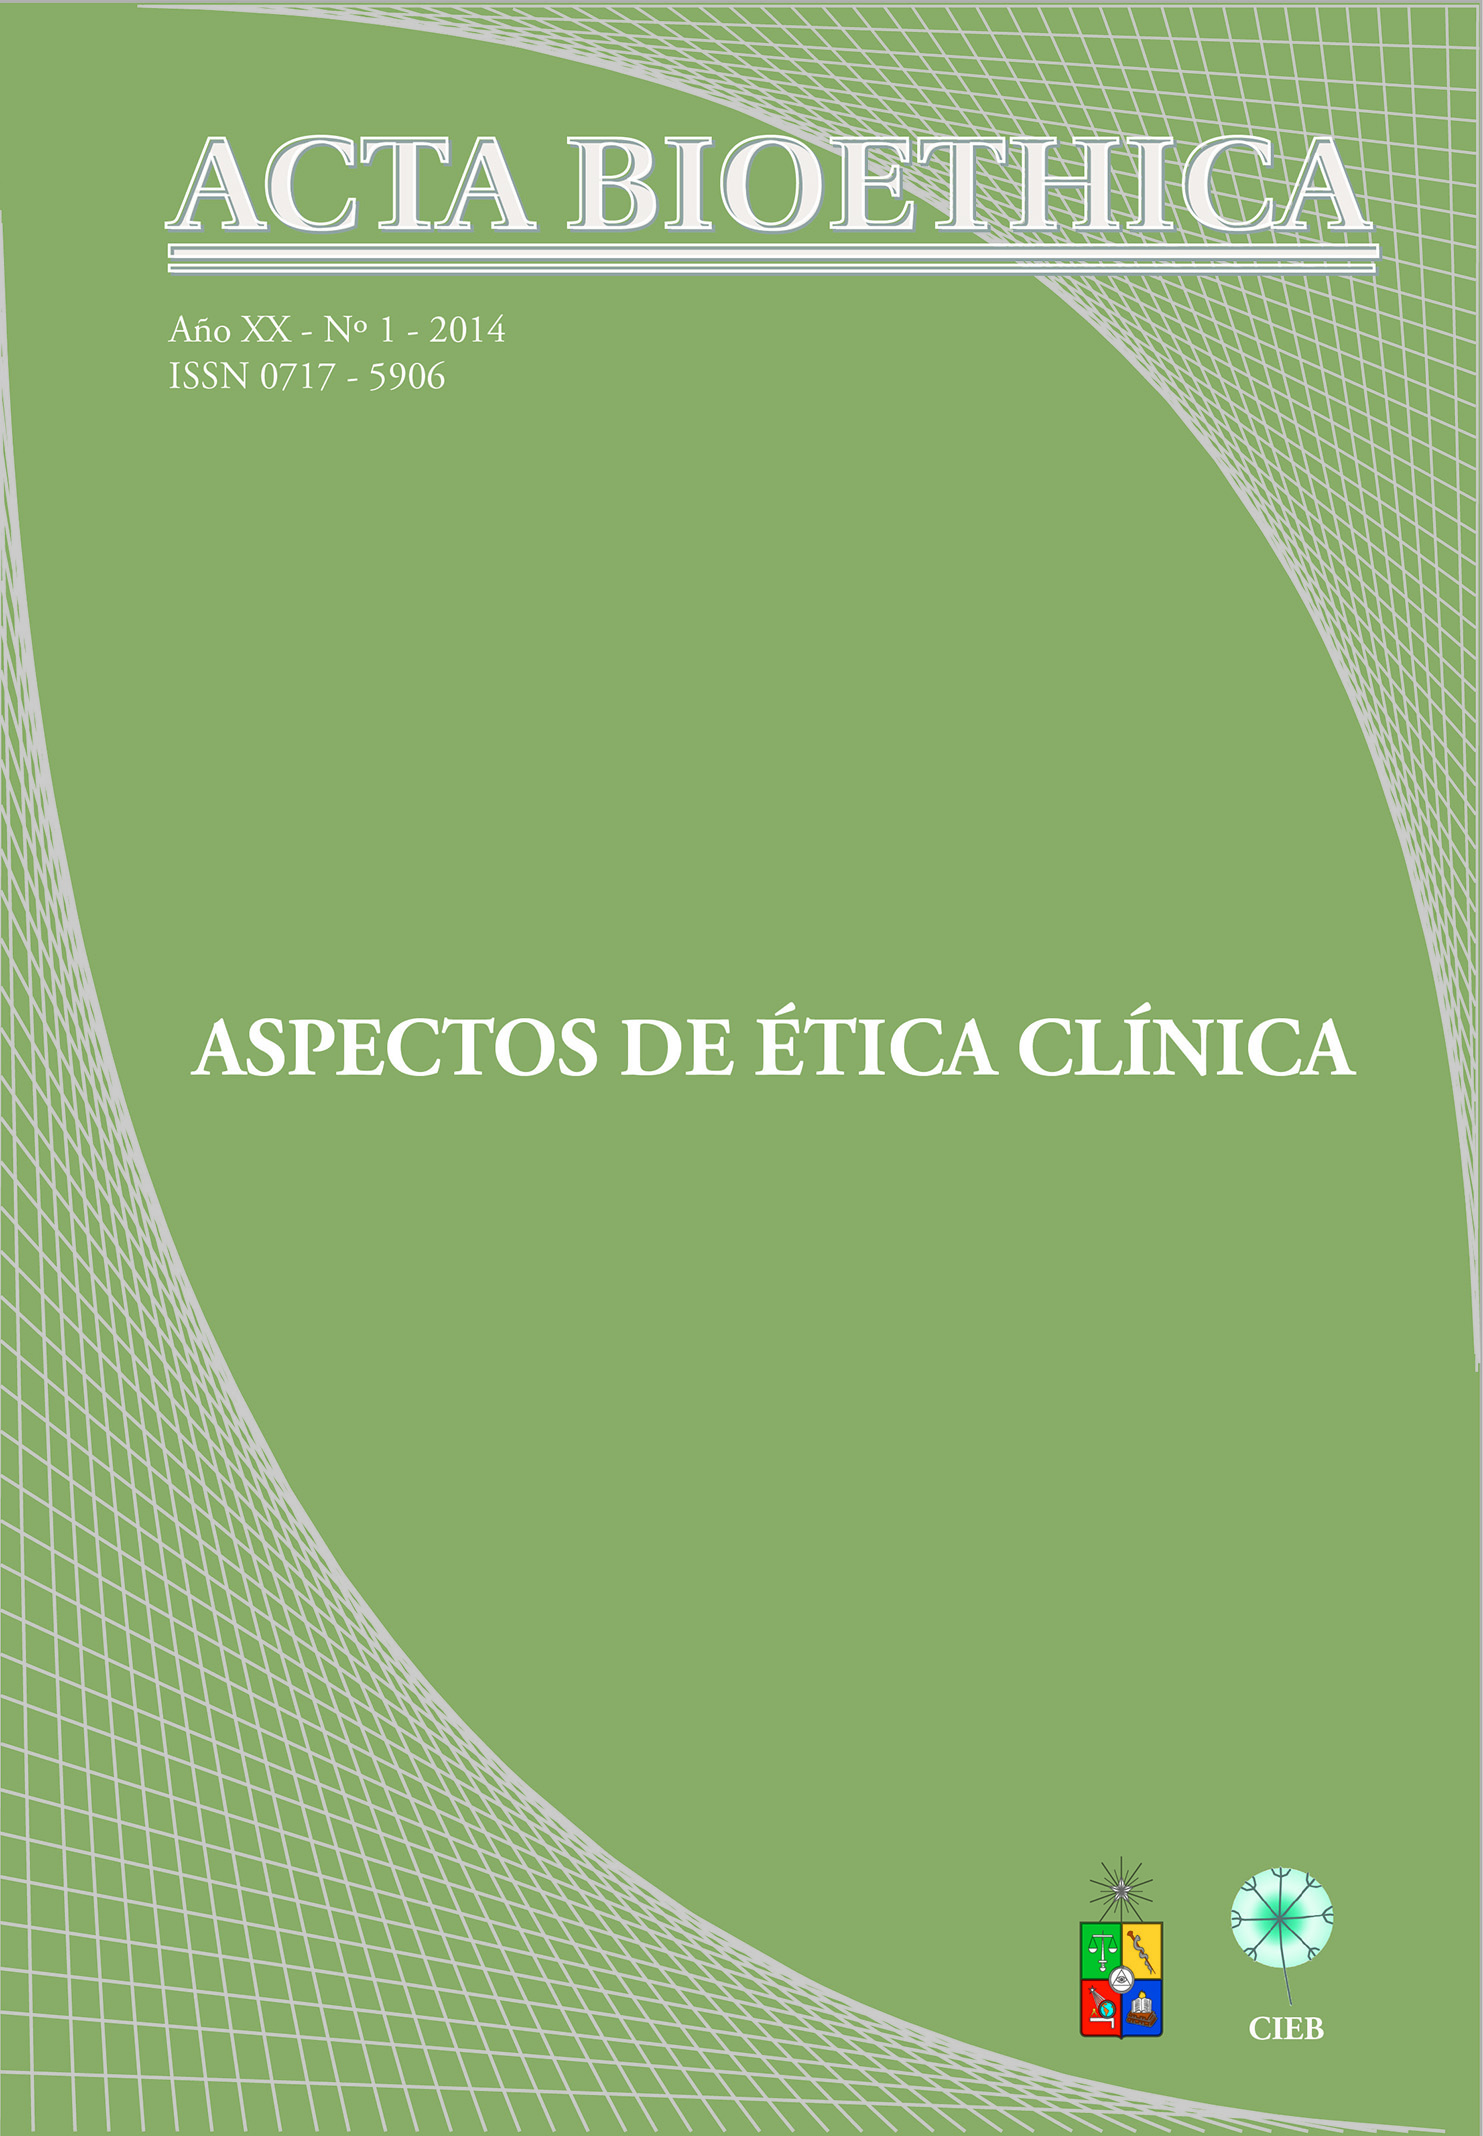 							Visualizar v. 20 n. 1 (2014): Aspectos de Ética Clínica
						